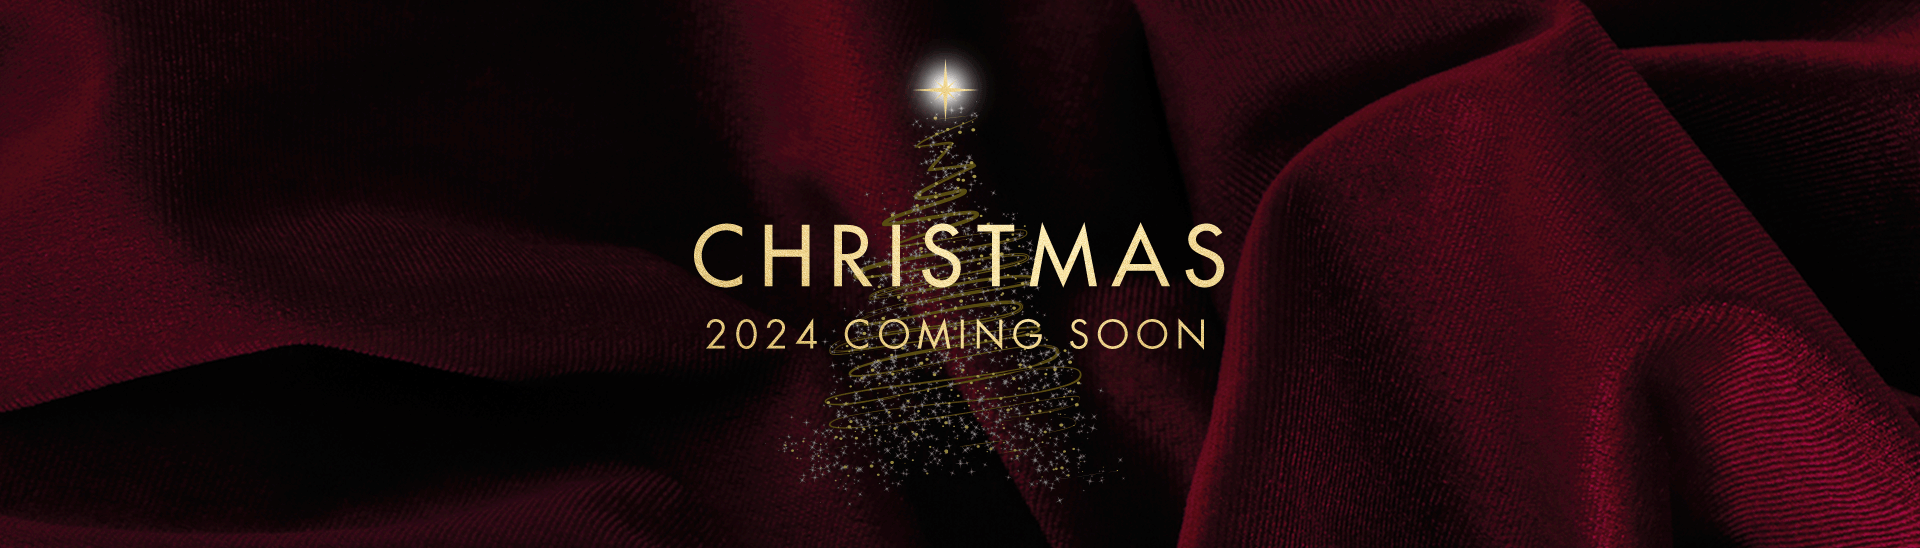 Christmas 2024 at Croxley Green